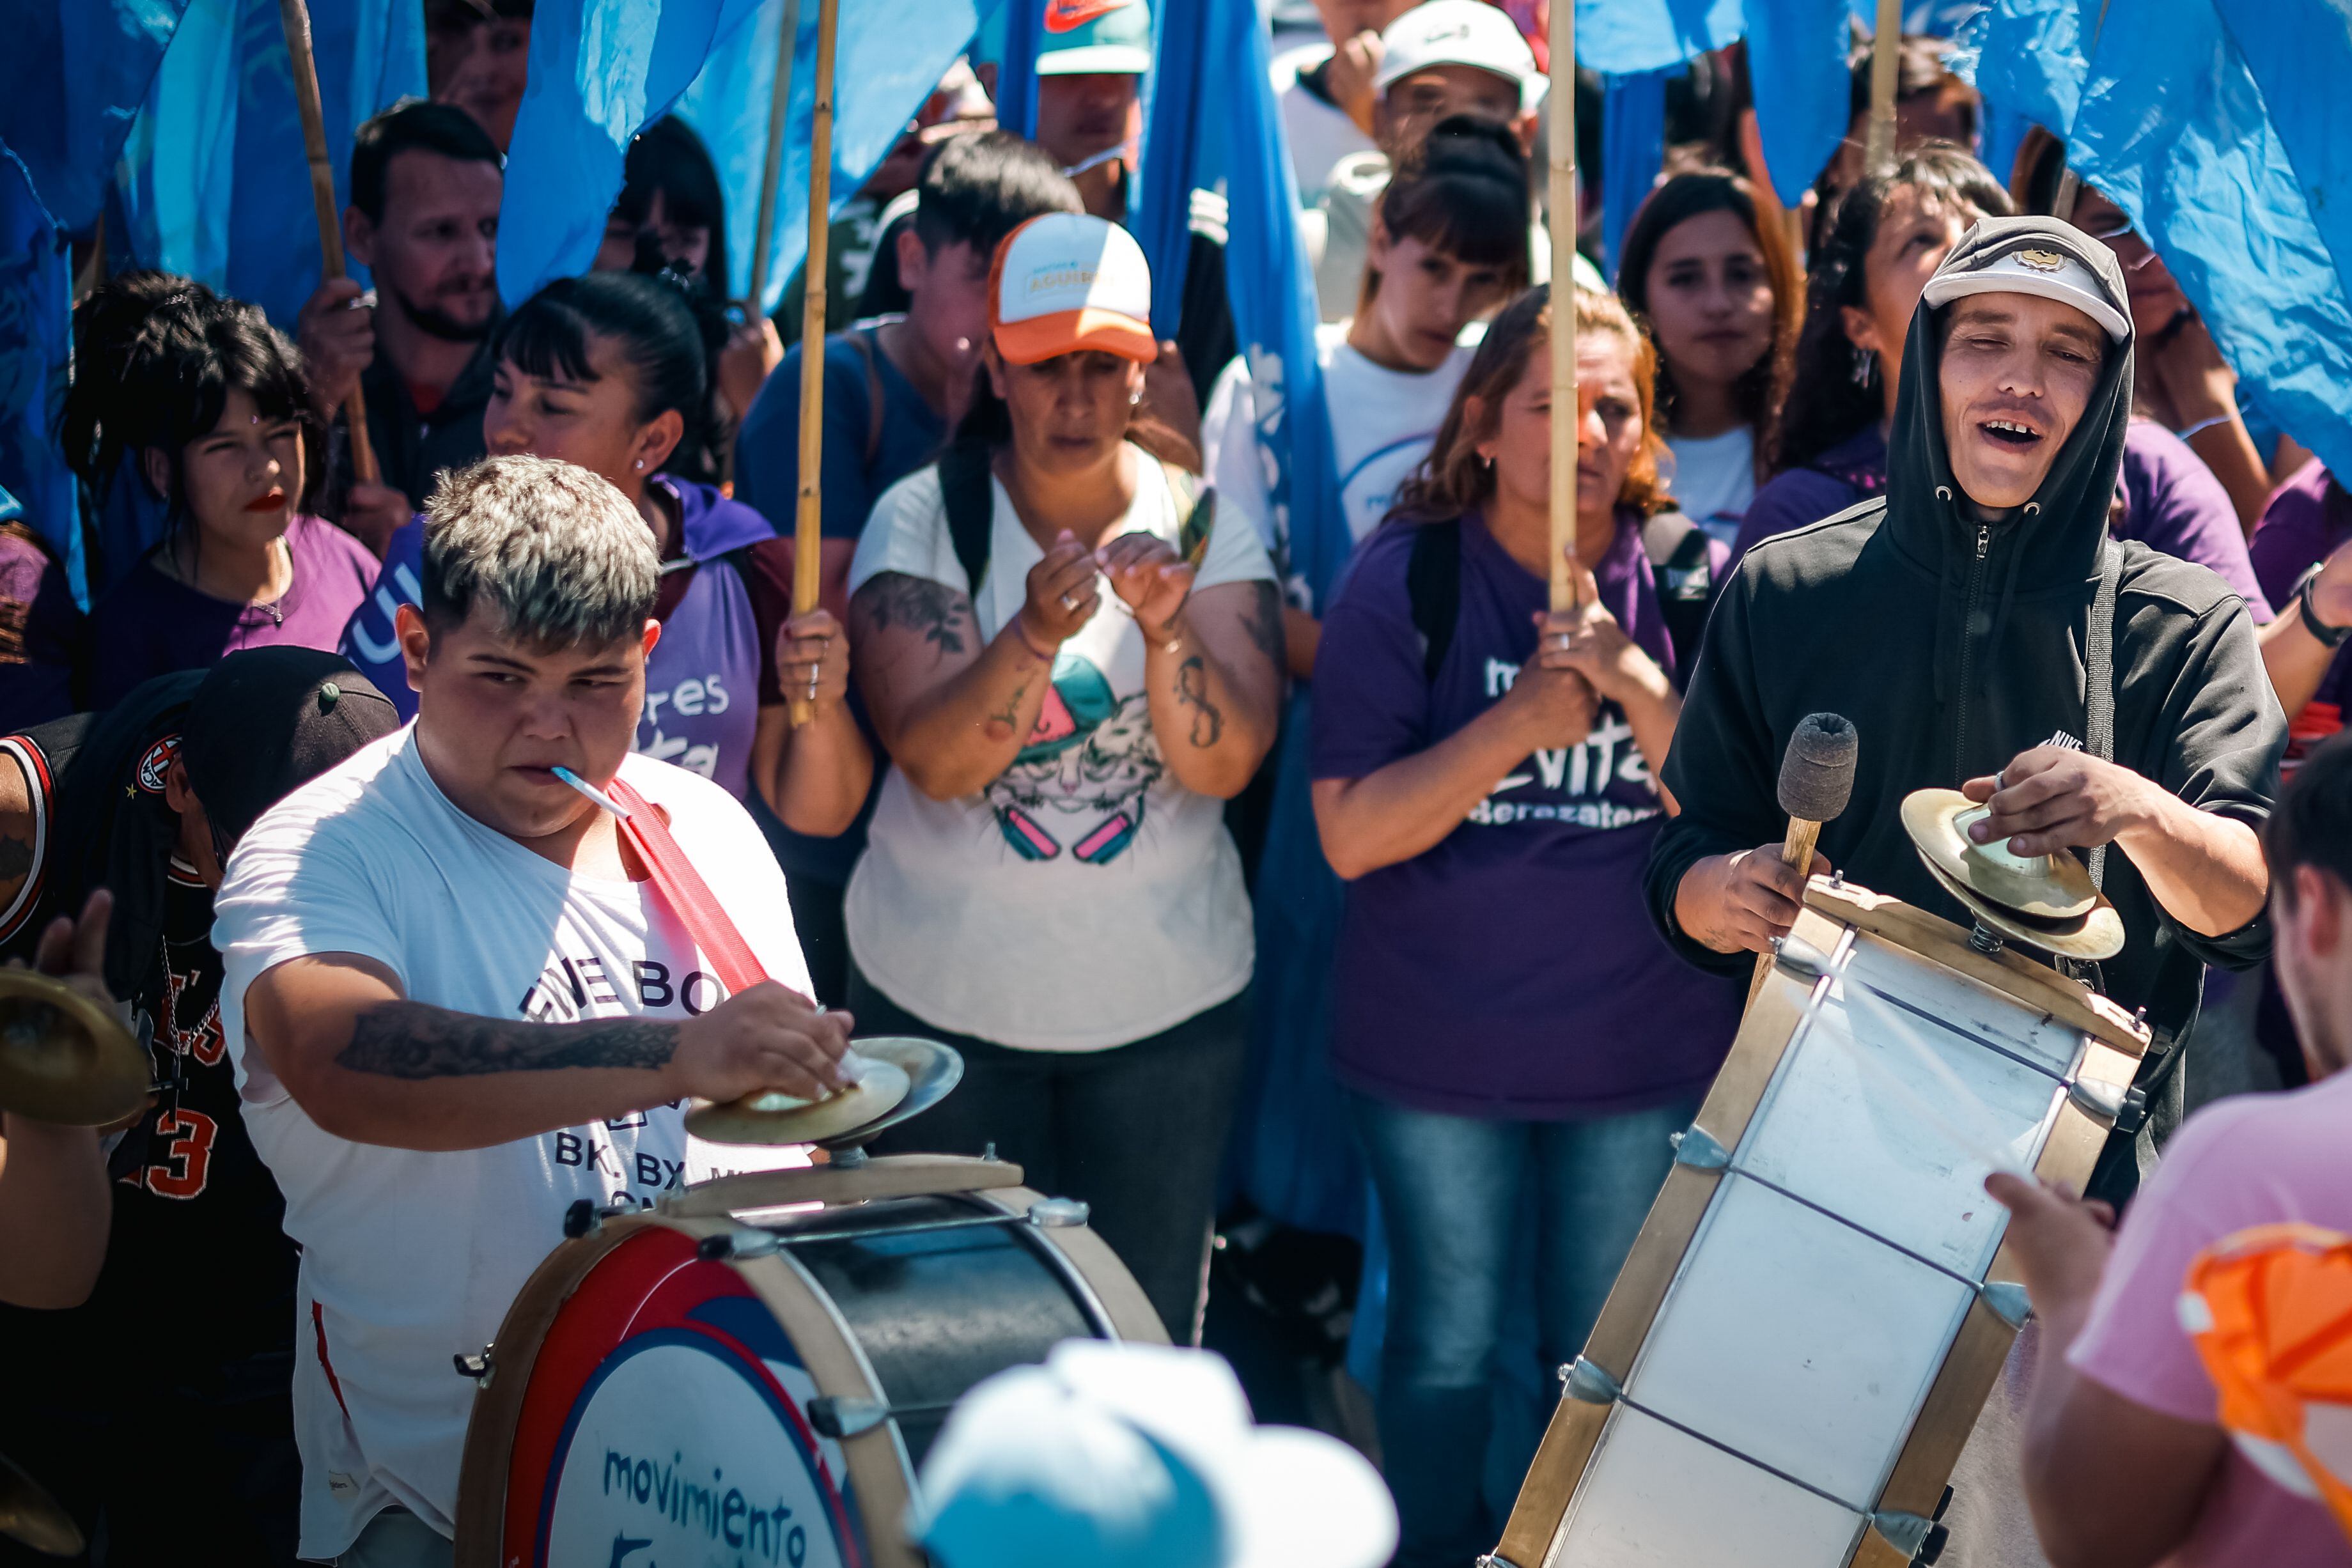 Los jóvenes argentinos votan con enojo, miedo y desencanto con la vieja política (EFE)
